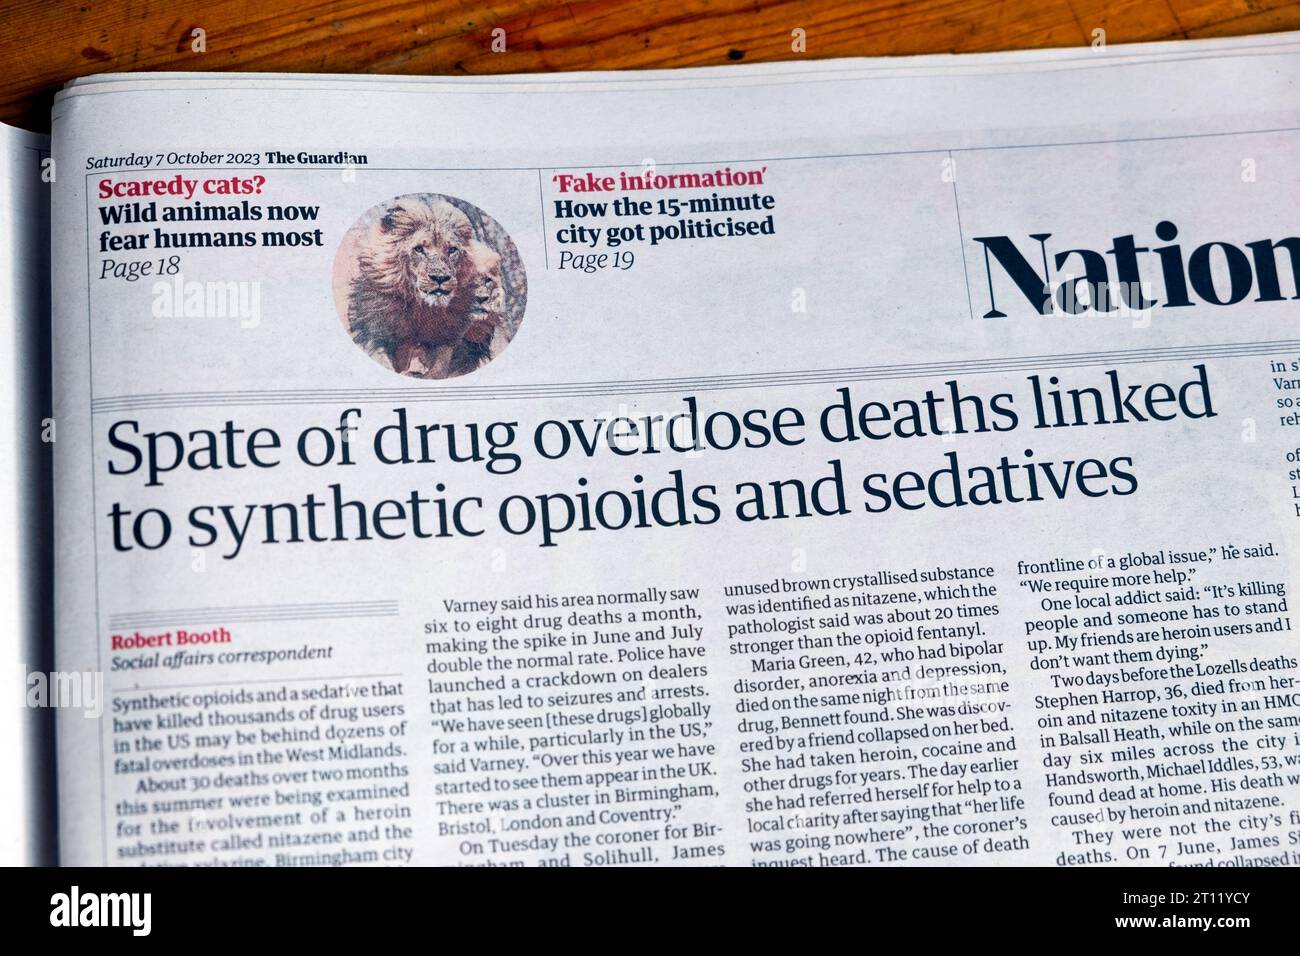 "Ondata di overdose di droga morti legate a oppioidi sintetici e sedativi" titolo del quotidiano Guardian droga aumento articolo 7 ottobre 2023 Londra Regno Unito Foto Stock